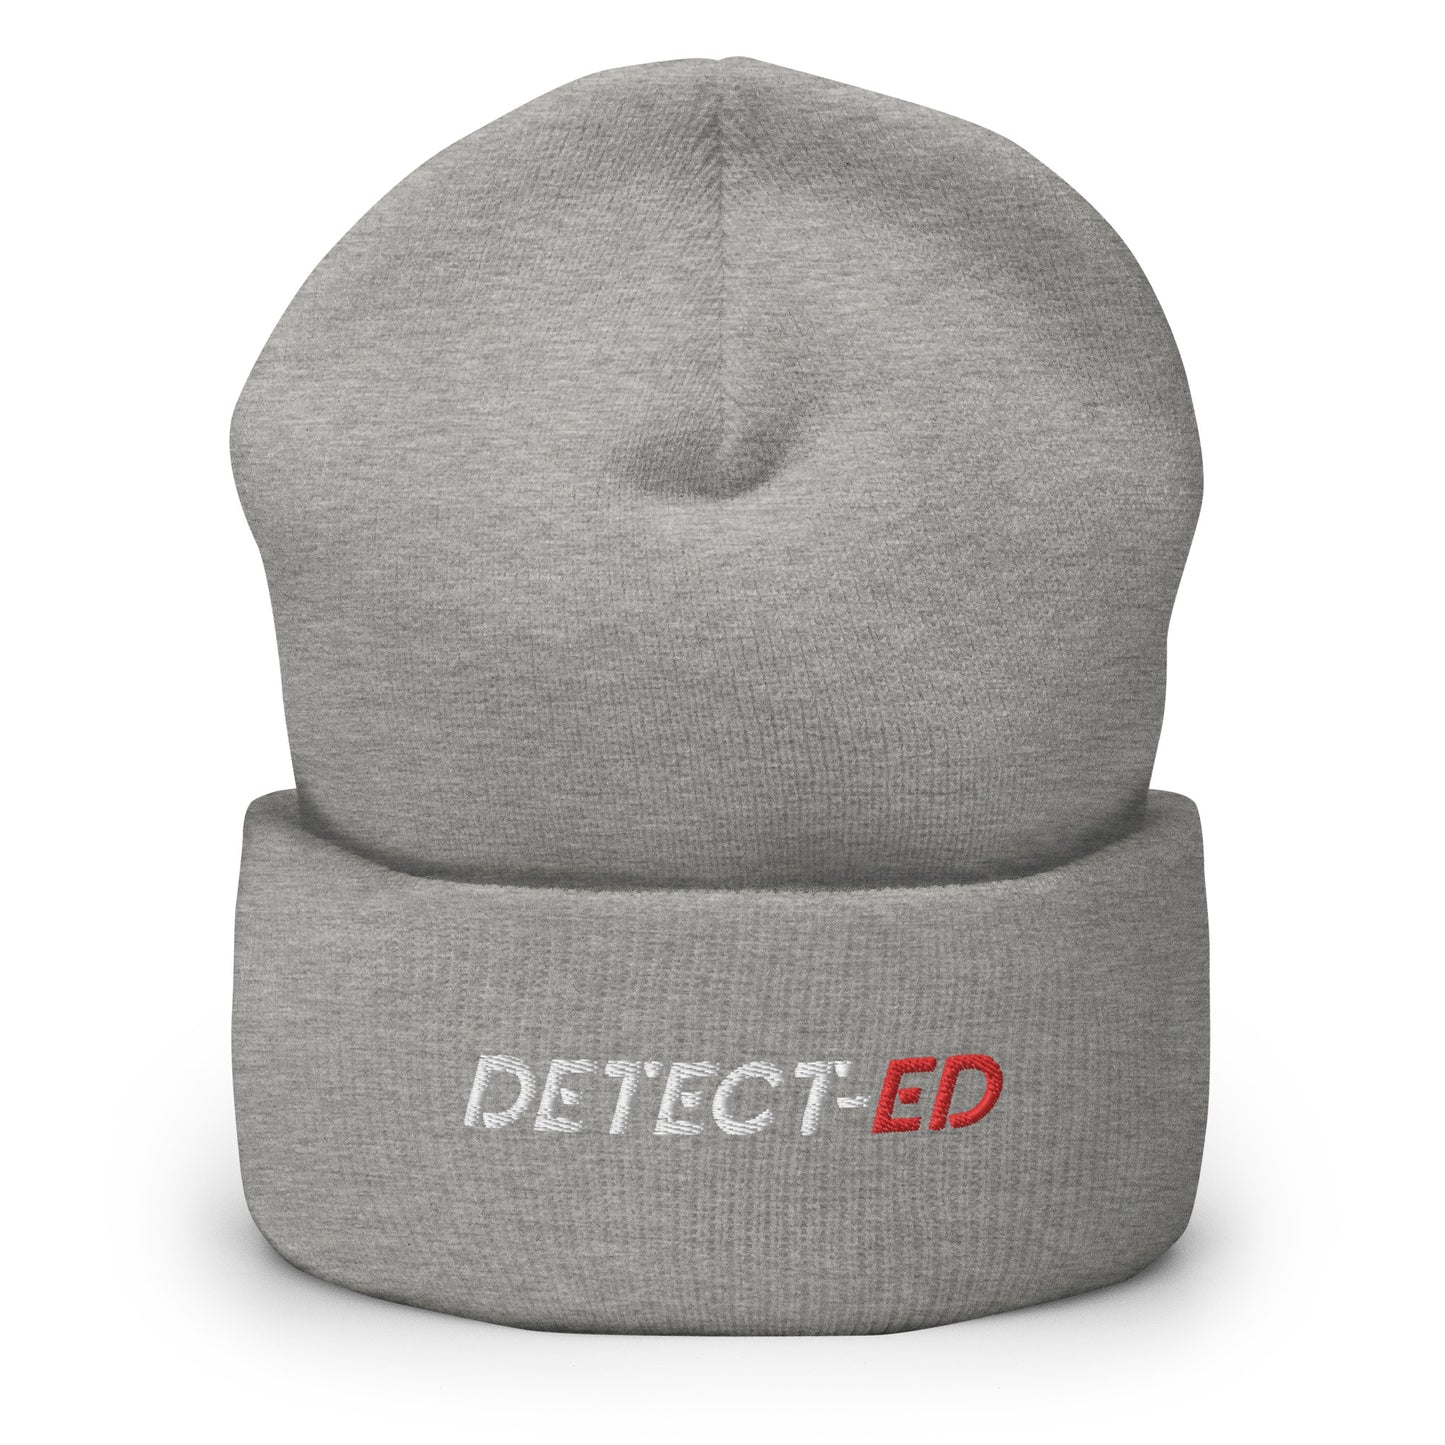 Detect-Ed Cuffed Beanie